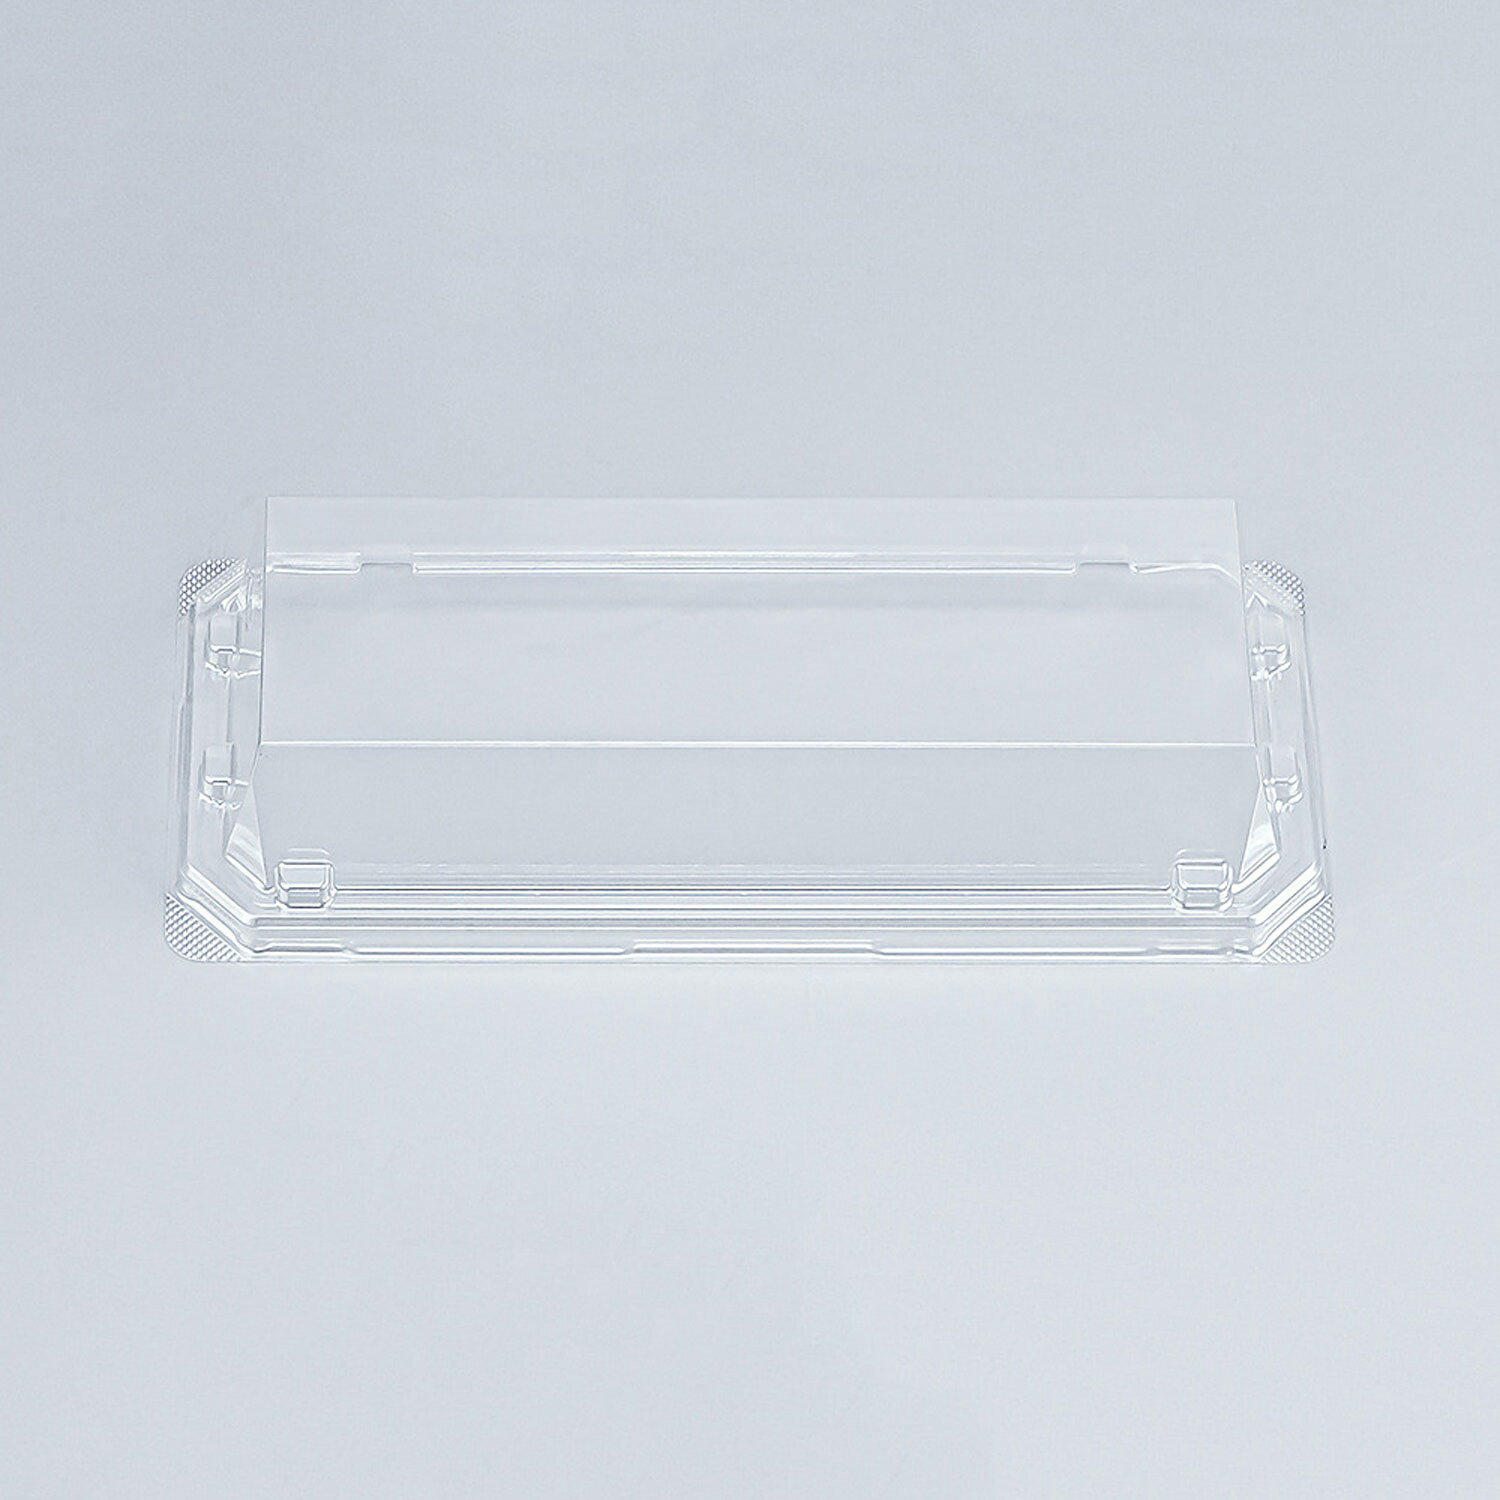 ガラスのような透明感を実現した『クリアエッジ』嵌合蓋です。※本体は別売り。商品コード00273088メーカー名シーピー化成サイズ184×80×29mm材質APET重量5.00g電子レンジ不可種別蓋のみ対応付属品（別売）菓子容器 シーピー化成 UFパルチェ3 ホワイト本体関連商品(バラ)UFパルチェ3 嵌合蓋AP 50枚関連商品(ケース)UFパルチェ3 嵌合蓋AP 1200枚・注意事項：モニターの発色によって色が異なって見える場合がございます。・領収書については、楽天お客様マイページから、商品出荷後にお客様自身で印刷して頂きますようお願い申し上げます。・本店では一つの注文に対して、複数の送り先を指定することができません。お手数おかけしますが、注文を分けていただきます様お願い致します。・支払い方法で前払いを指定されて、支払いまで日数が空く場合、商品が廃番もしくは欠品になる恐れがございます。ご了承ください。・注文が重なった場合、発送予定日が遅れる可能性がございます。ご了承ください。・お急ぎの場合はなるべく支払い方法で前払い以外を選択いただきます様お願い致します。支払い時期によっては希望納期に間に合わない場合がございます。